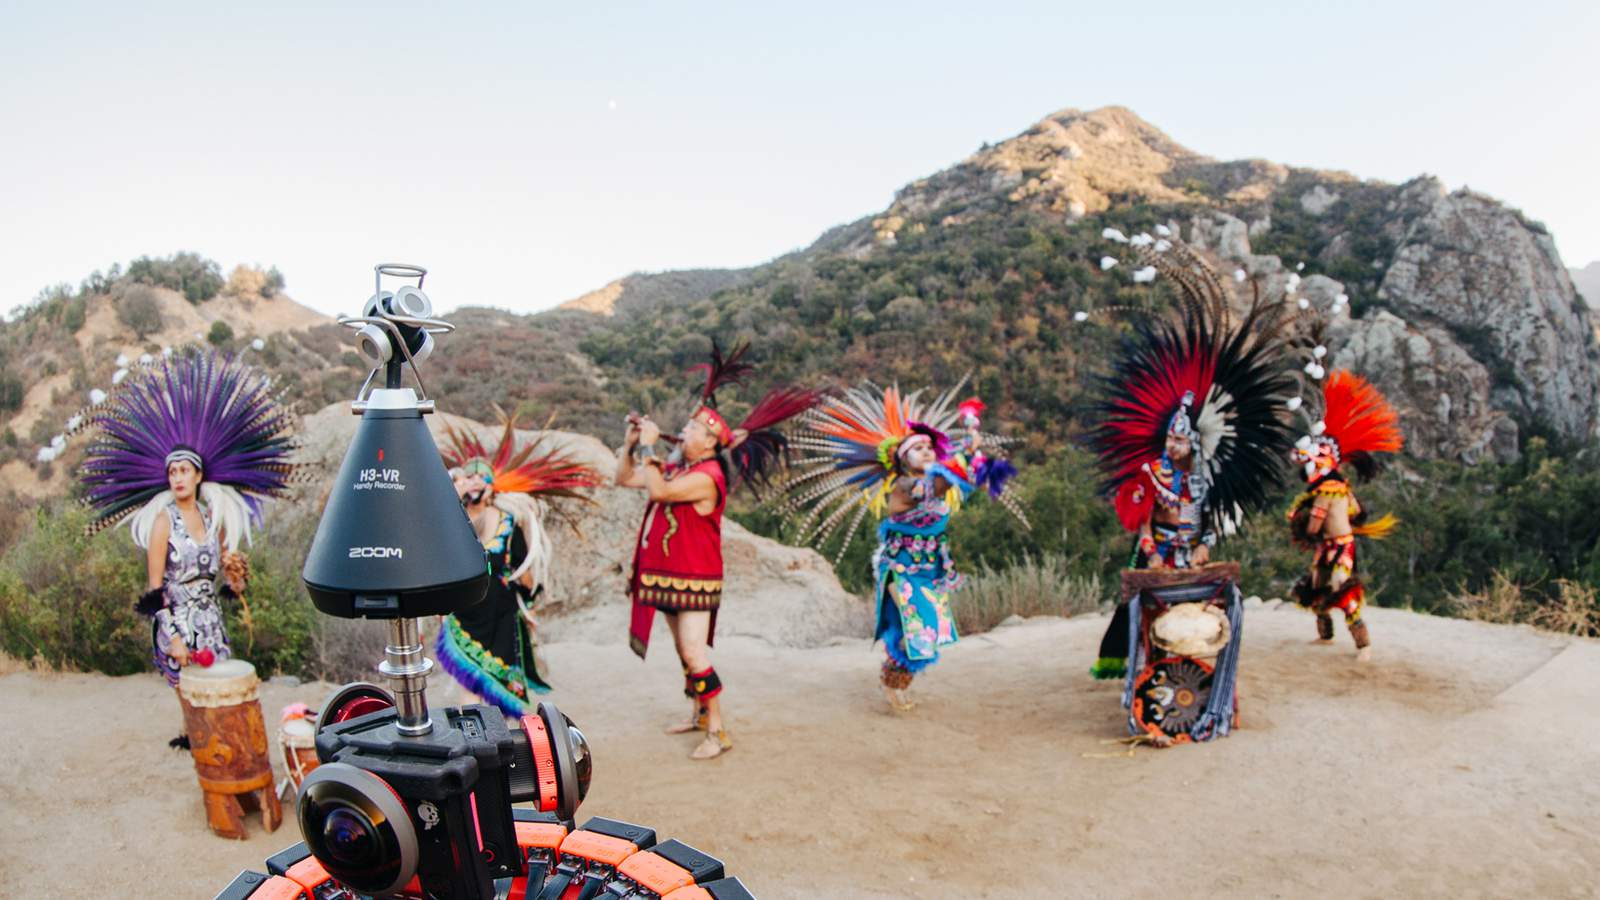 H3-VR che registra i suoni di un'antica musica azteca e dei danzatori